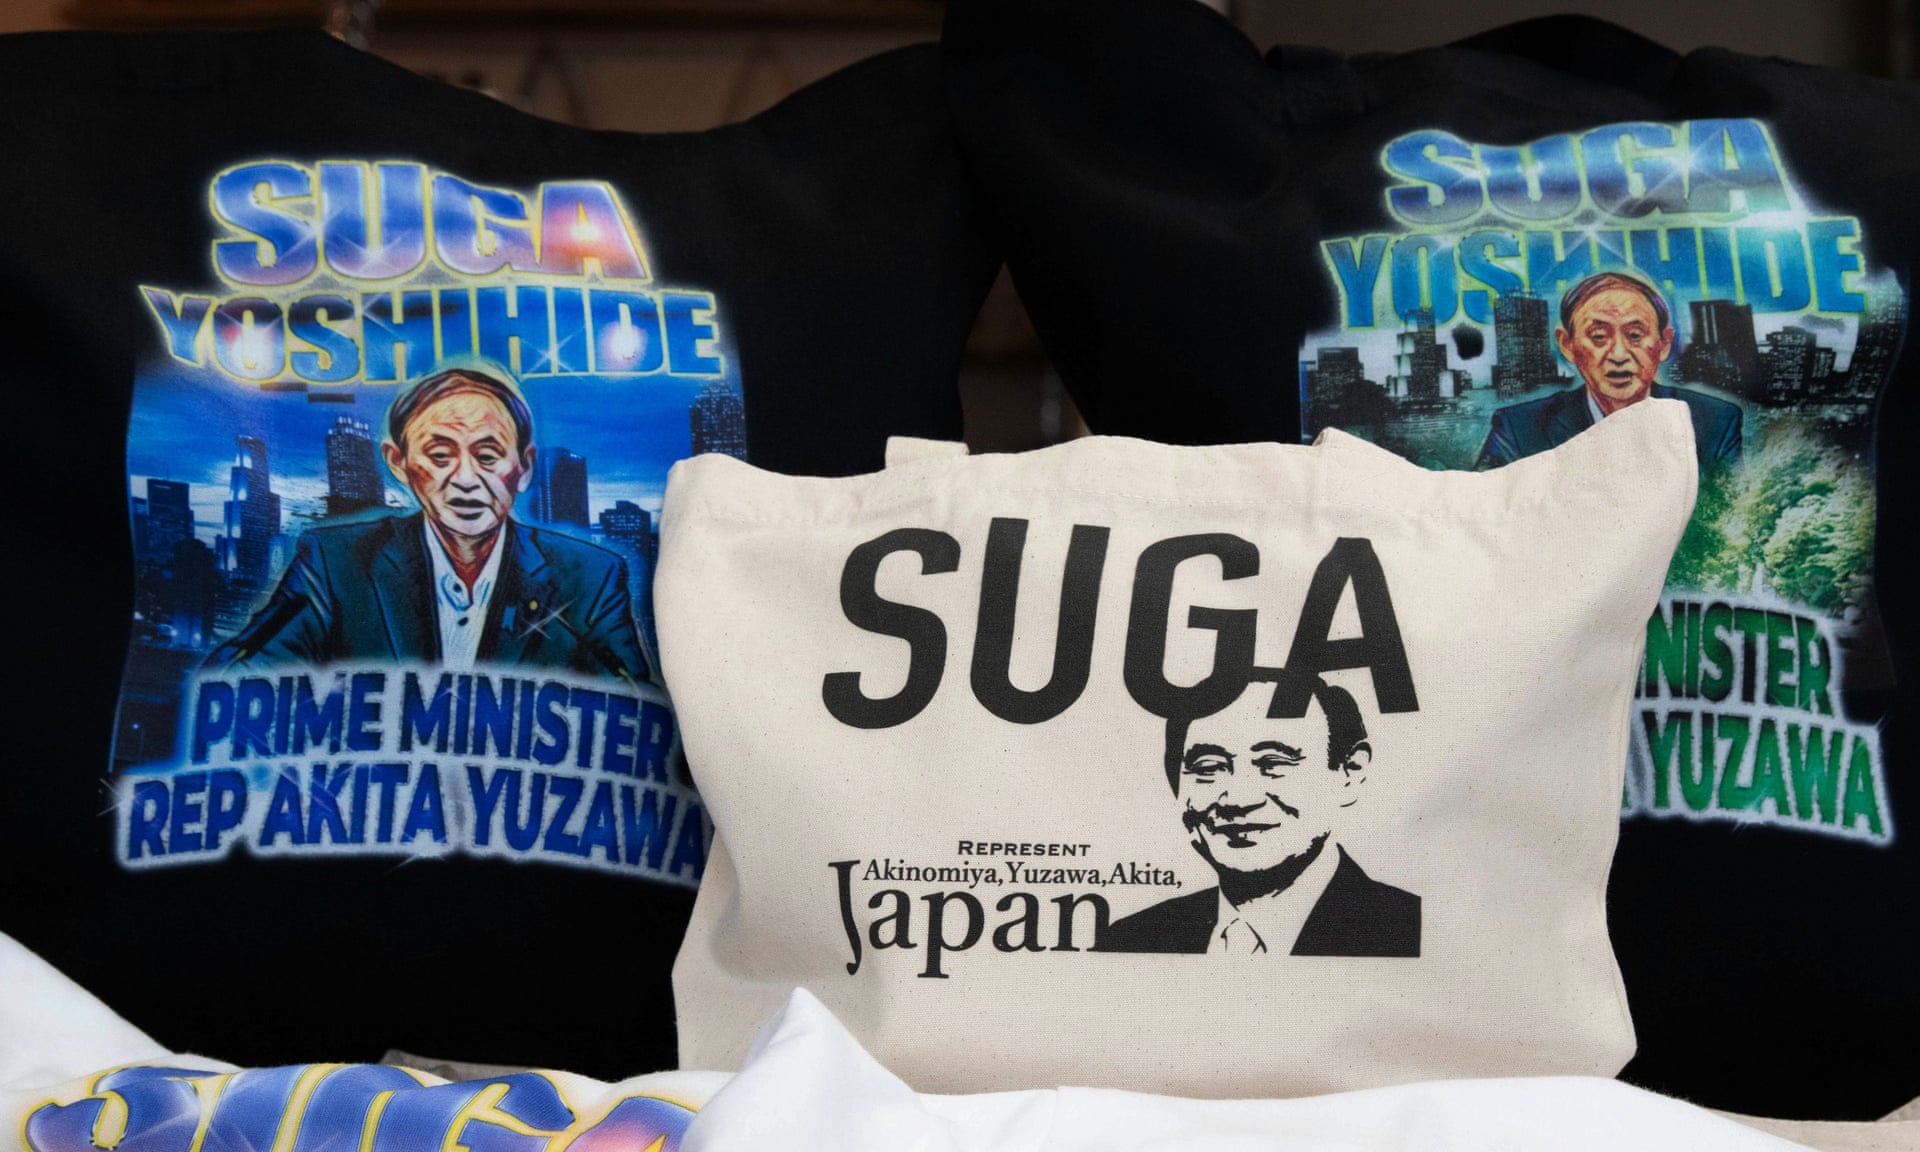 Hàng hóa có hình thủ tướng mới được mong đợi của Nhật Bản, Yoshihide Suga, được trưng bày tại một cửa hàng ở quê nhà Yuzawa